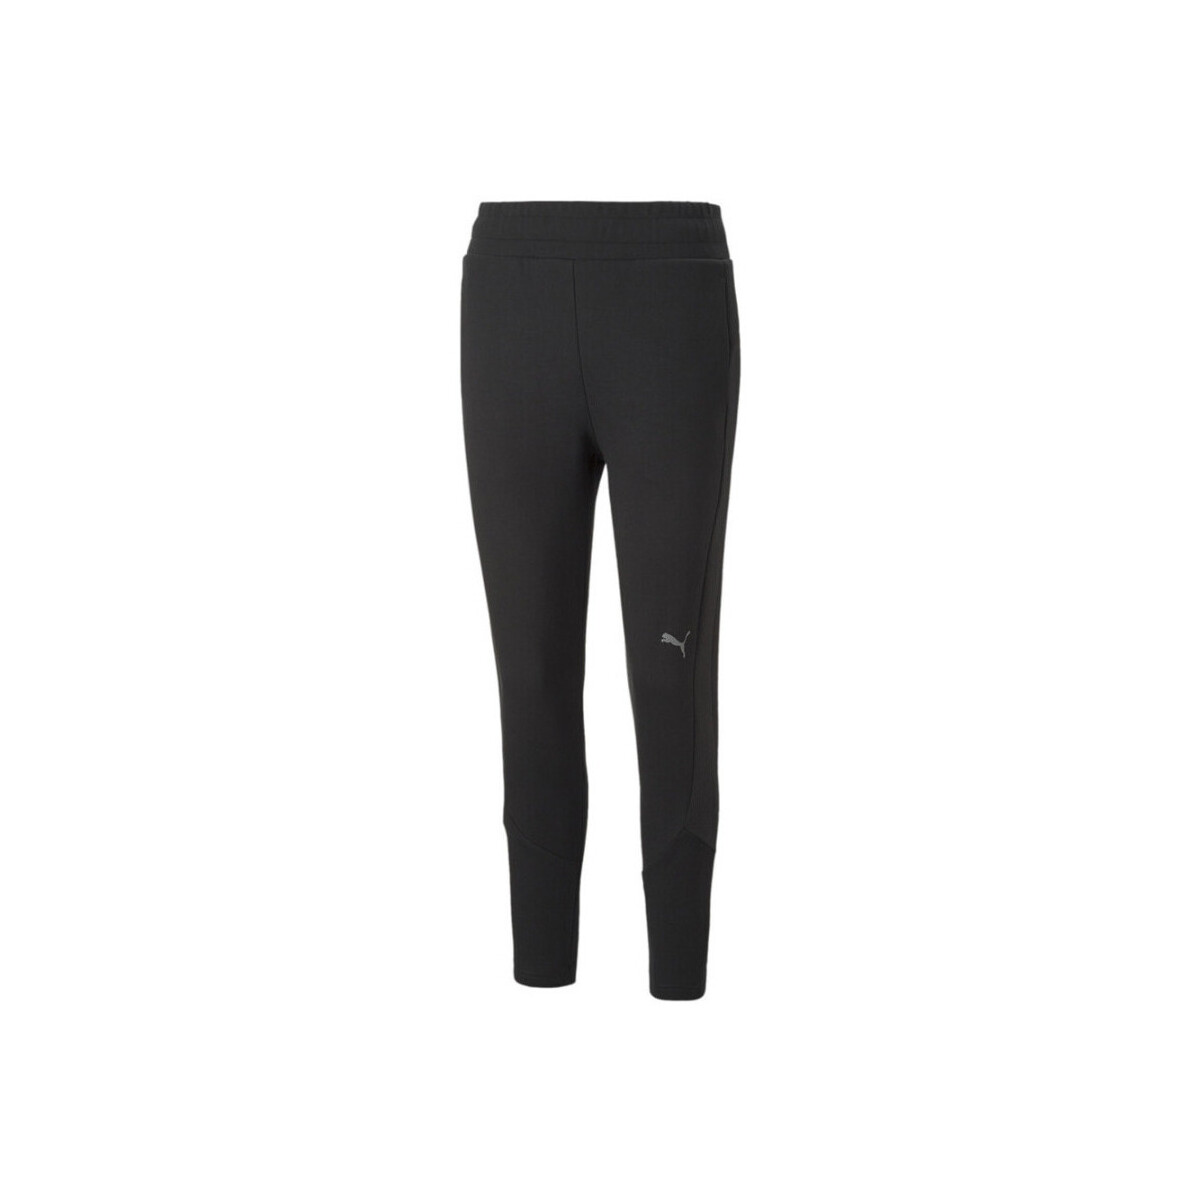 Vêtements Femme Pantalons Puma - Pantalon de jogging - noir Noir